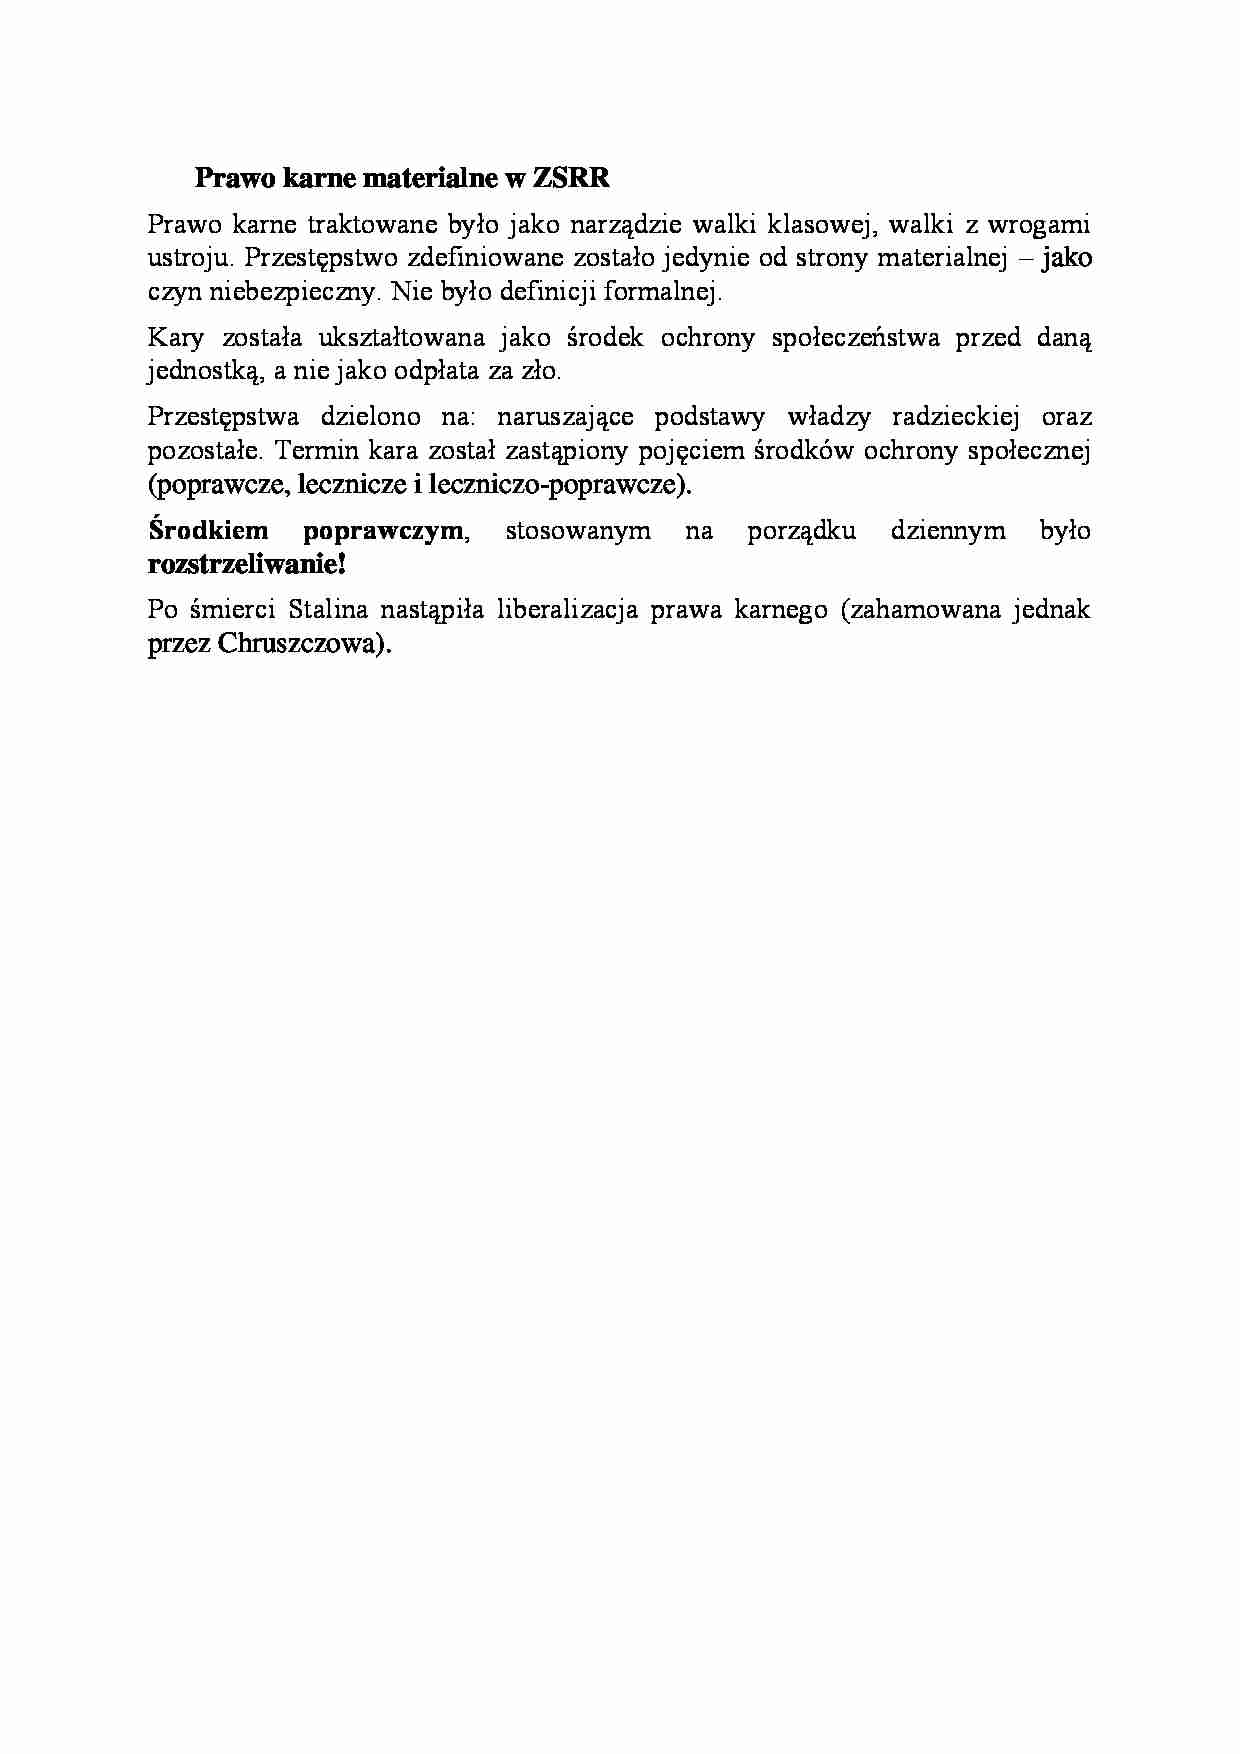 Prawo karne materialne w ZSRR-opracowanie - strona 1